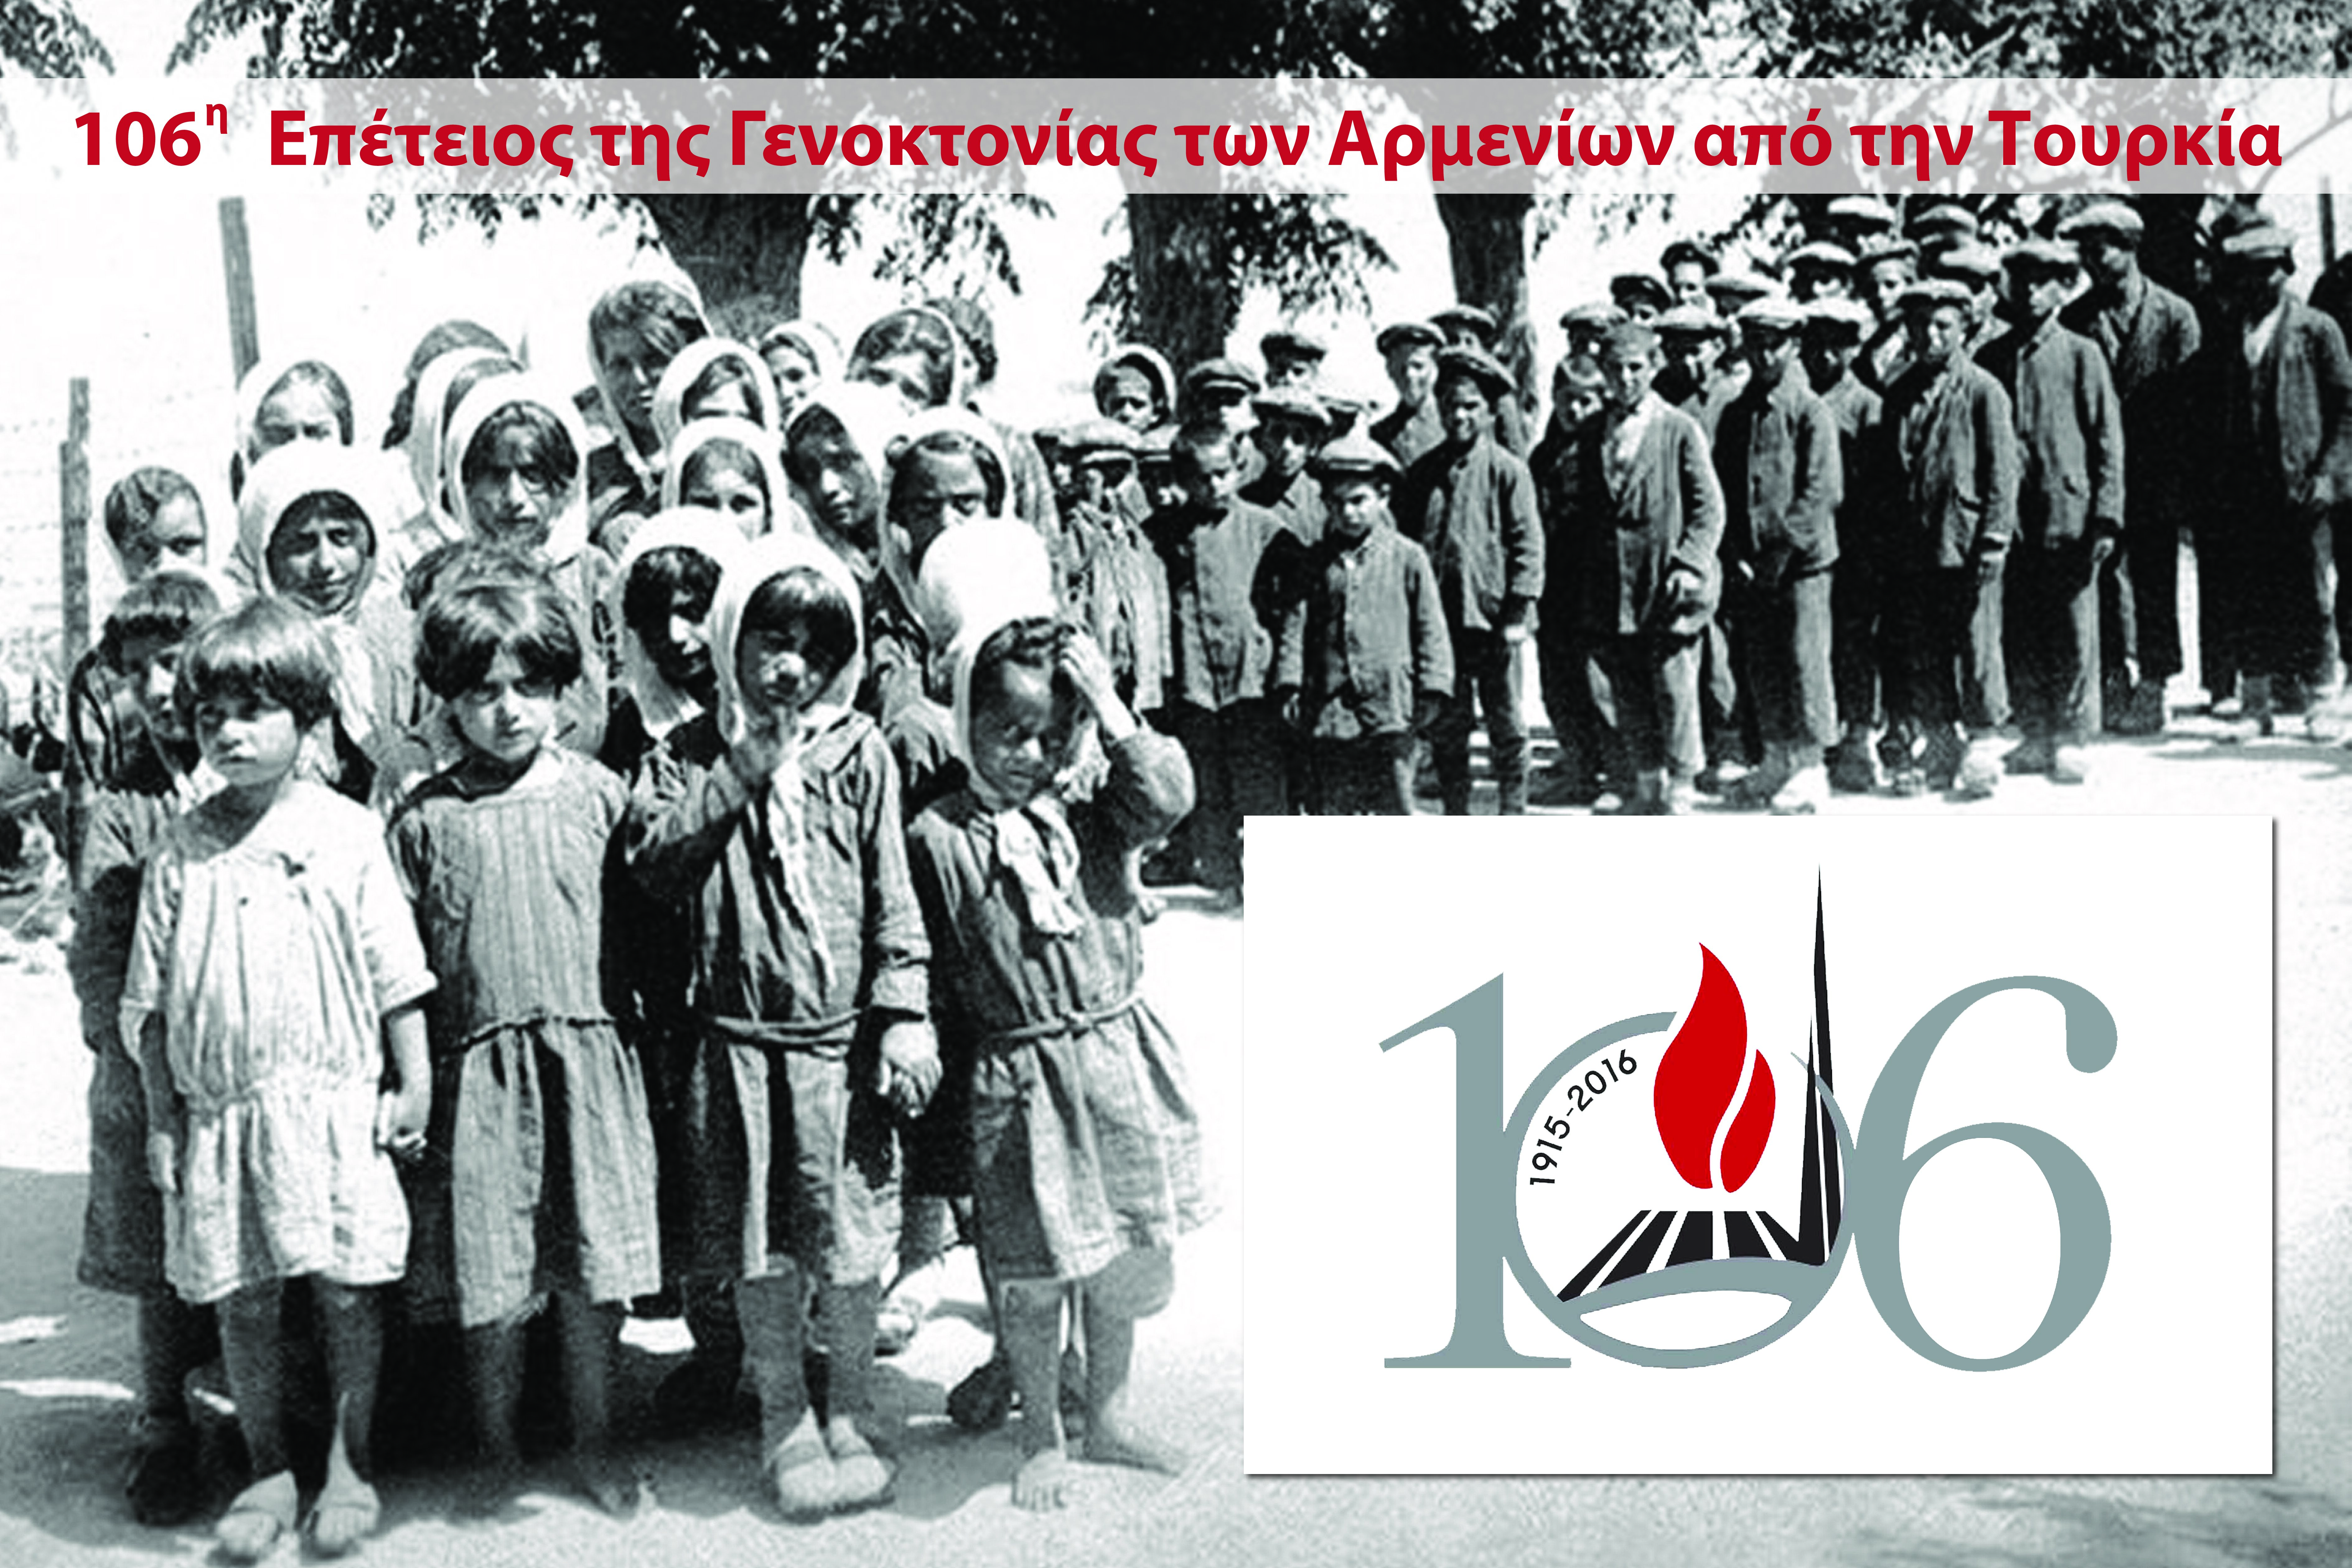 Εκδηλώσεις μνήμης για την 106η επέτειο μνήμης της Γενοκτονίας των Αρμενίων από την Τουρκία